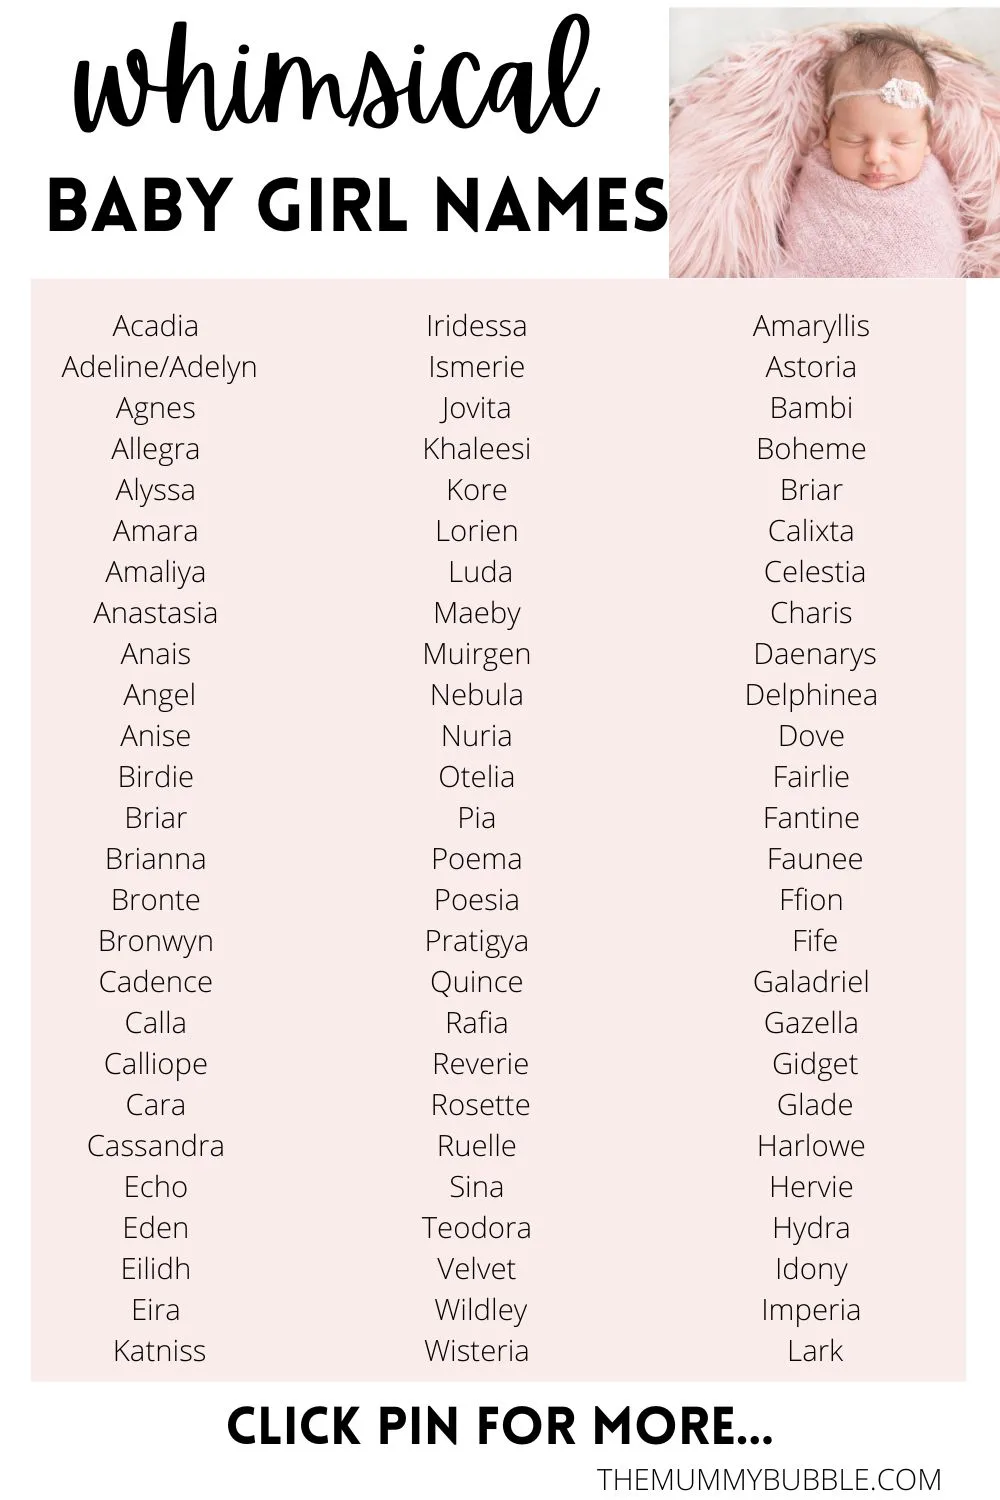 Whimsical baby girl names